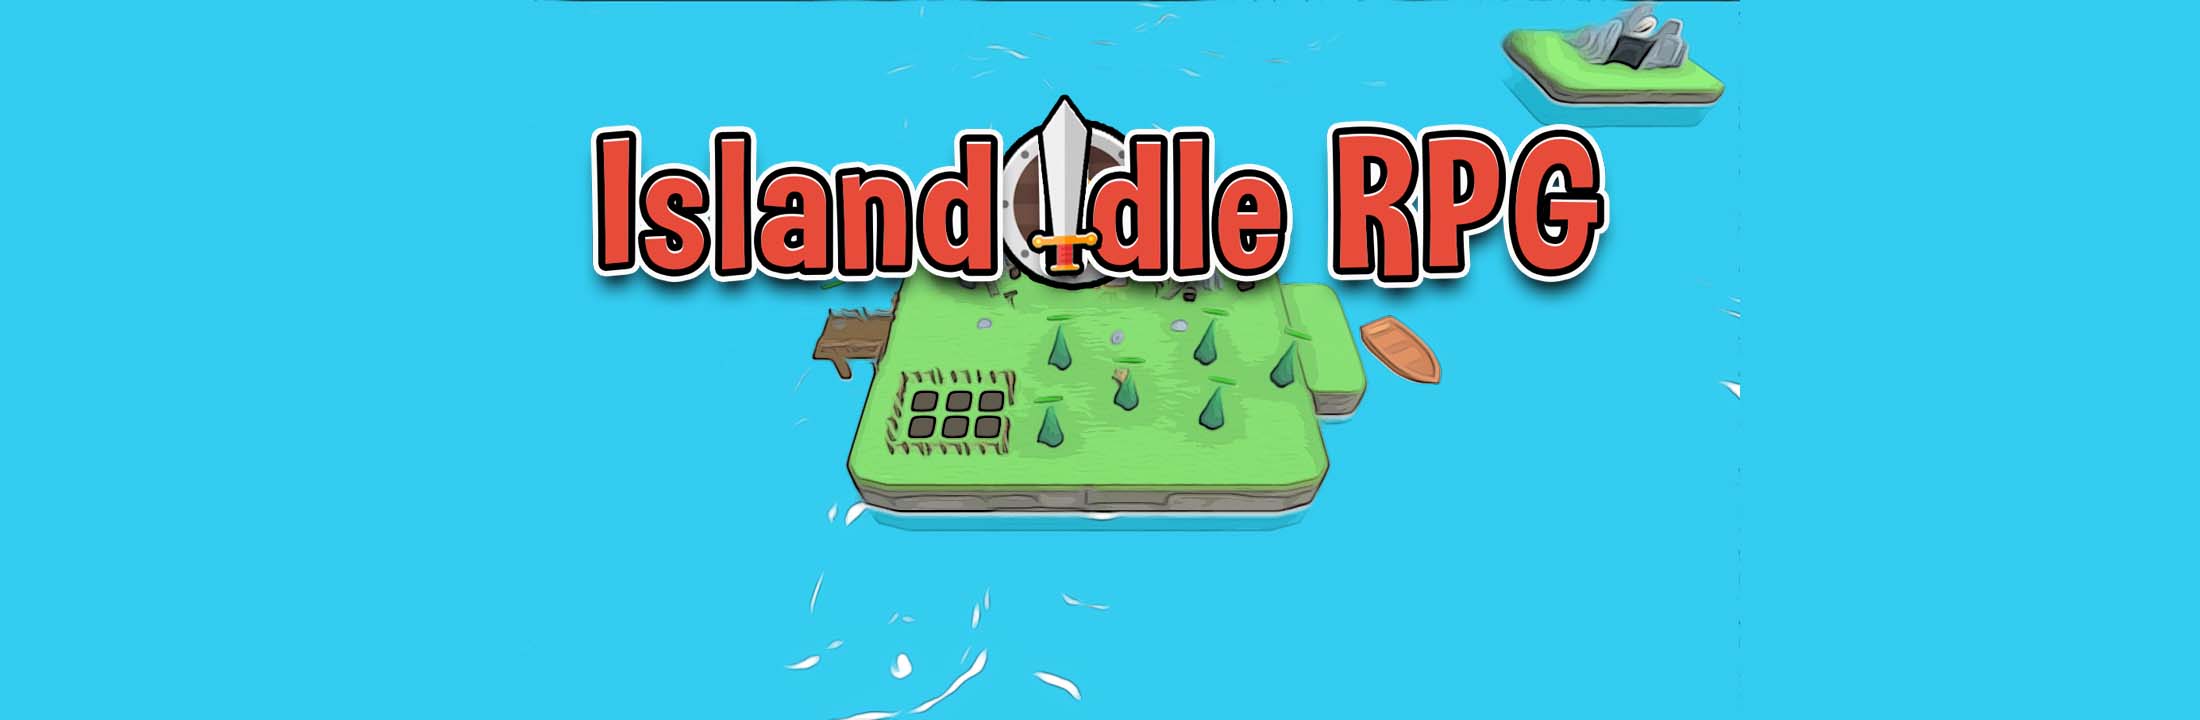 Island Idle RPG Cover 3